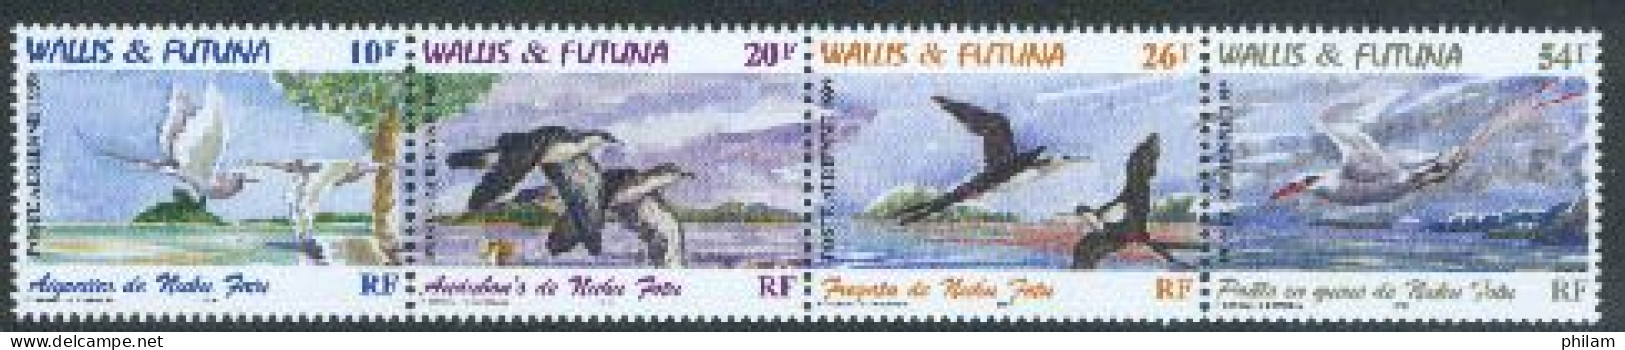 WALLIS ET FUTUNA 1999 - Oiseaux De Nuku Fotu 4 V. - Seagulls